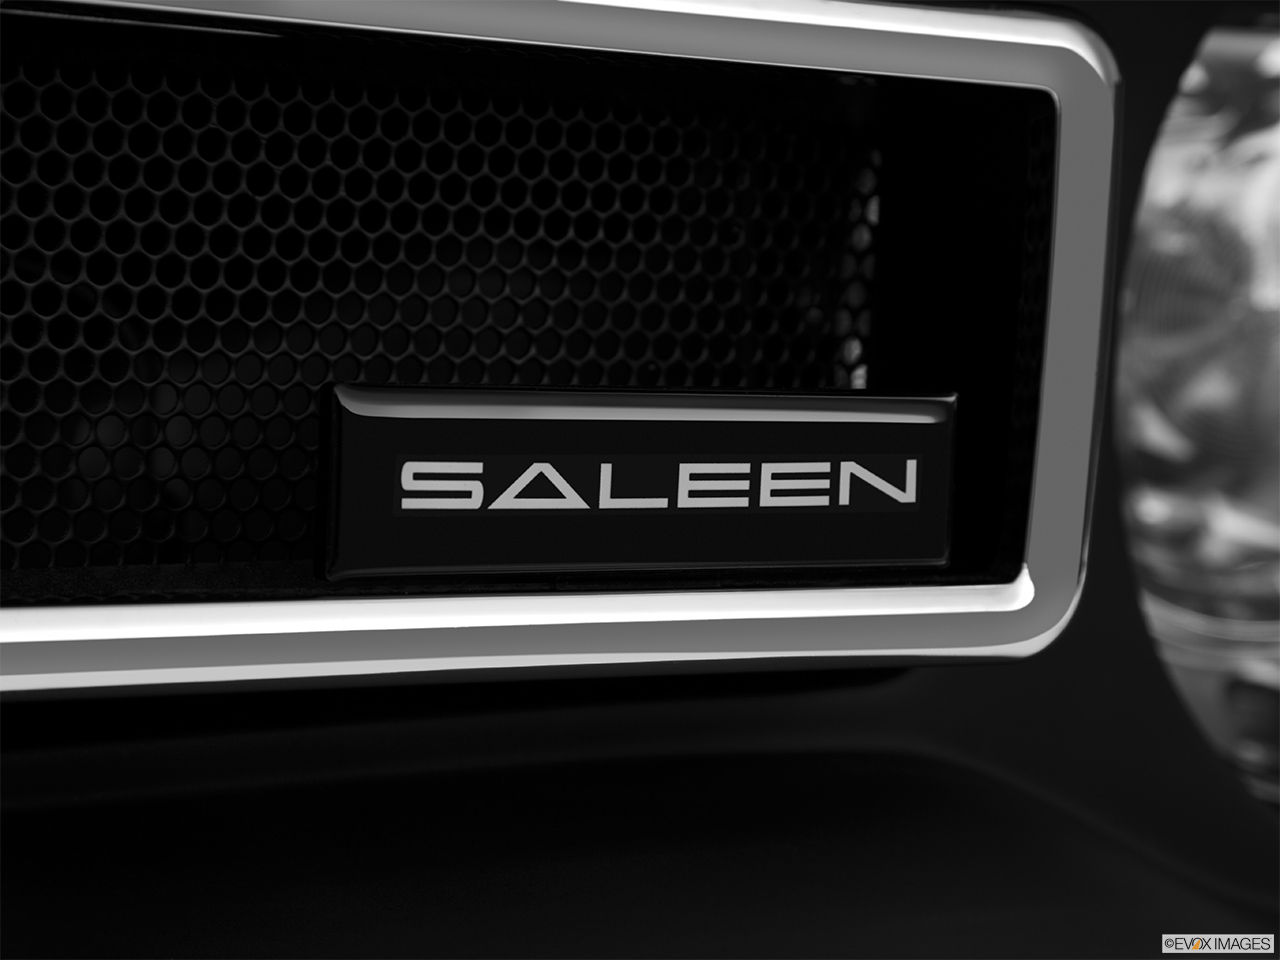 2014 Saleen 570 Challenger Label 570 Black Label Rear manufacture badge/emblem 